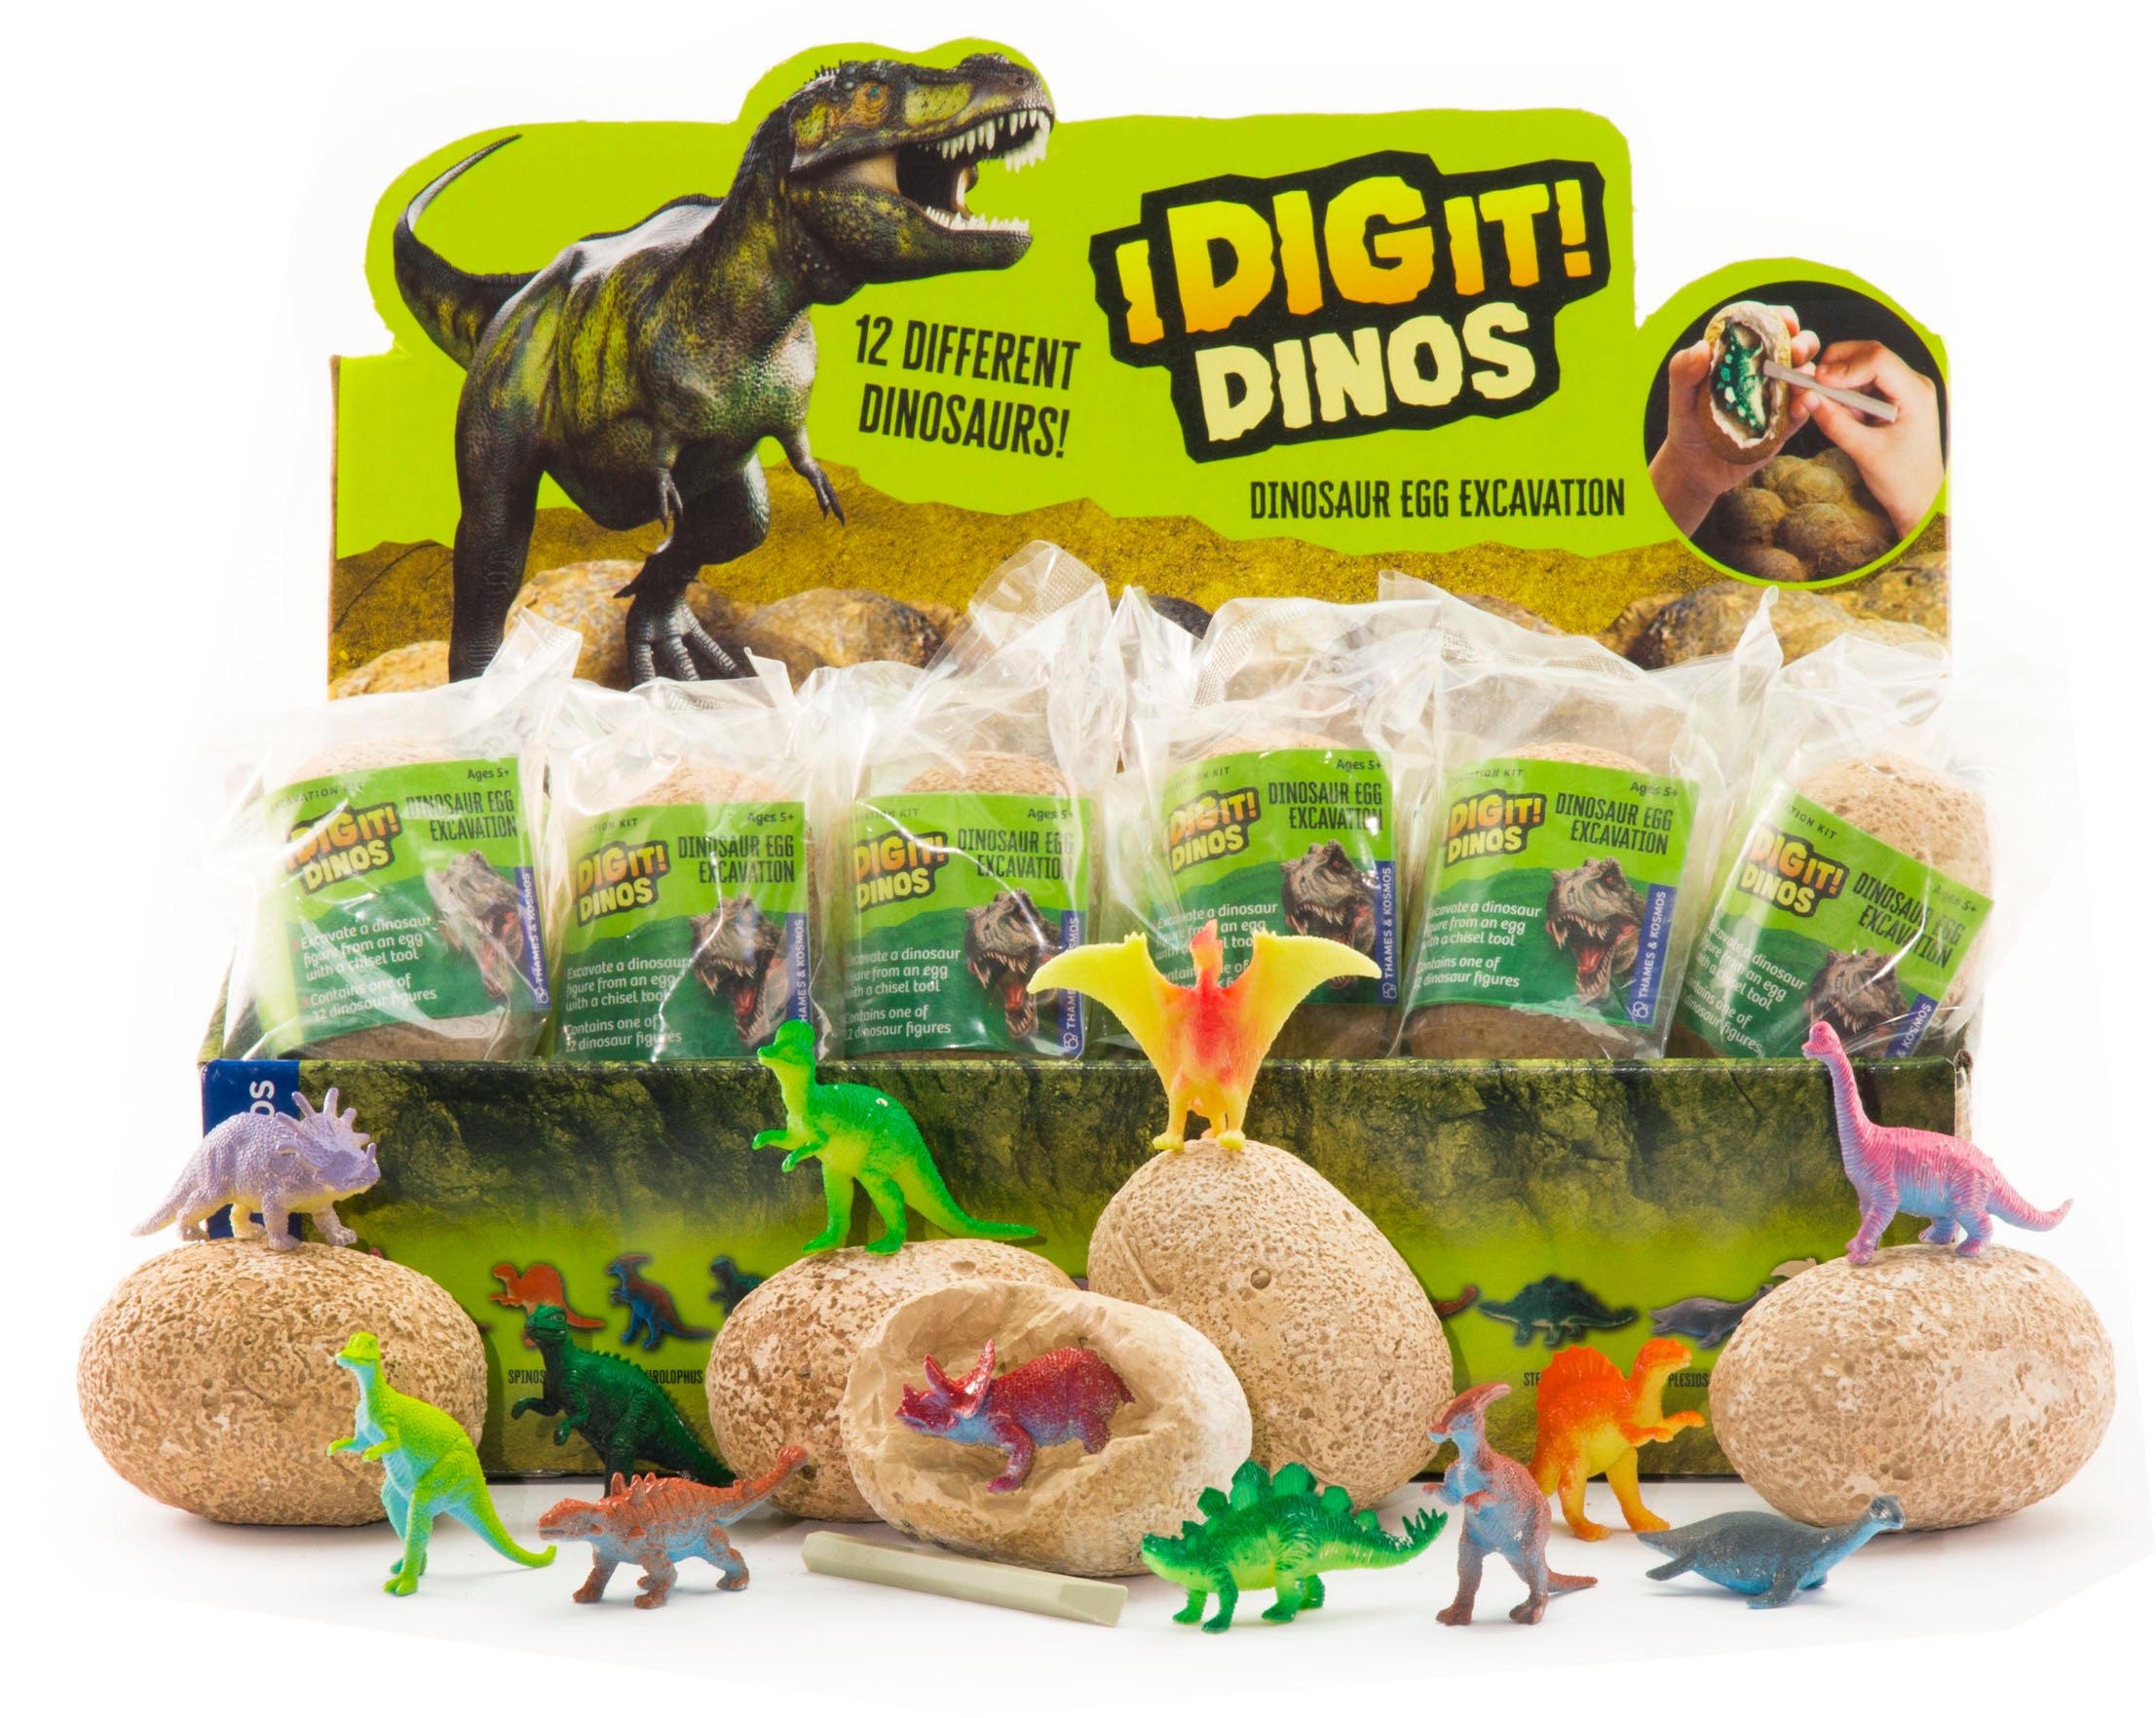 I Dig It! Dinos - Dinosaur Excavation    